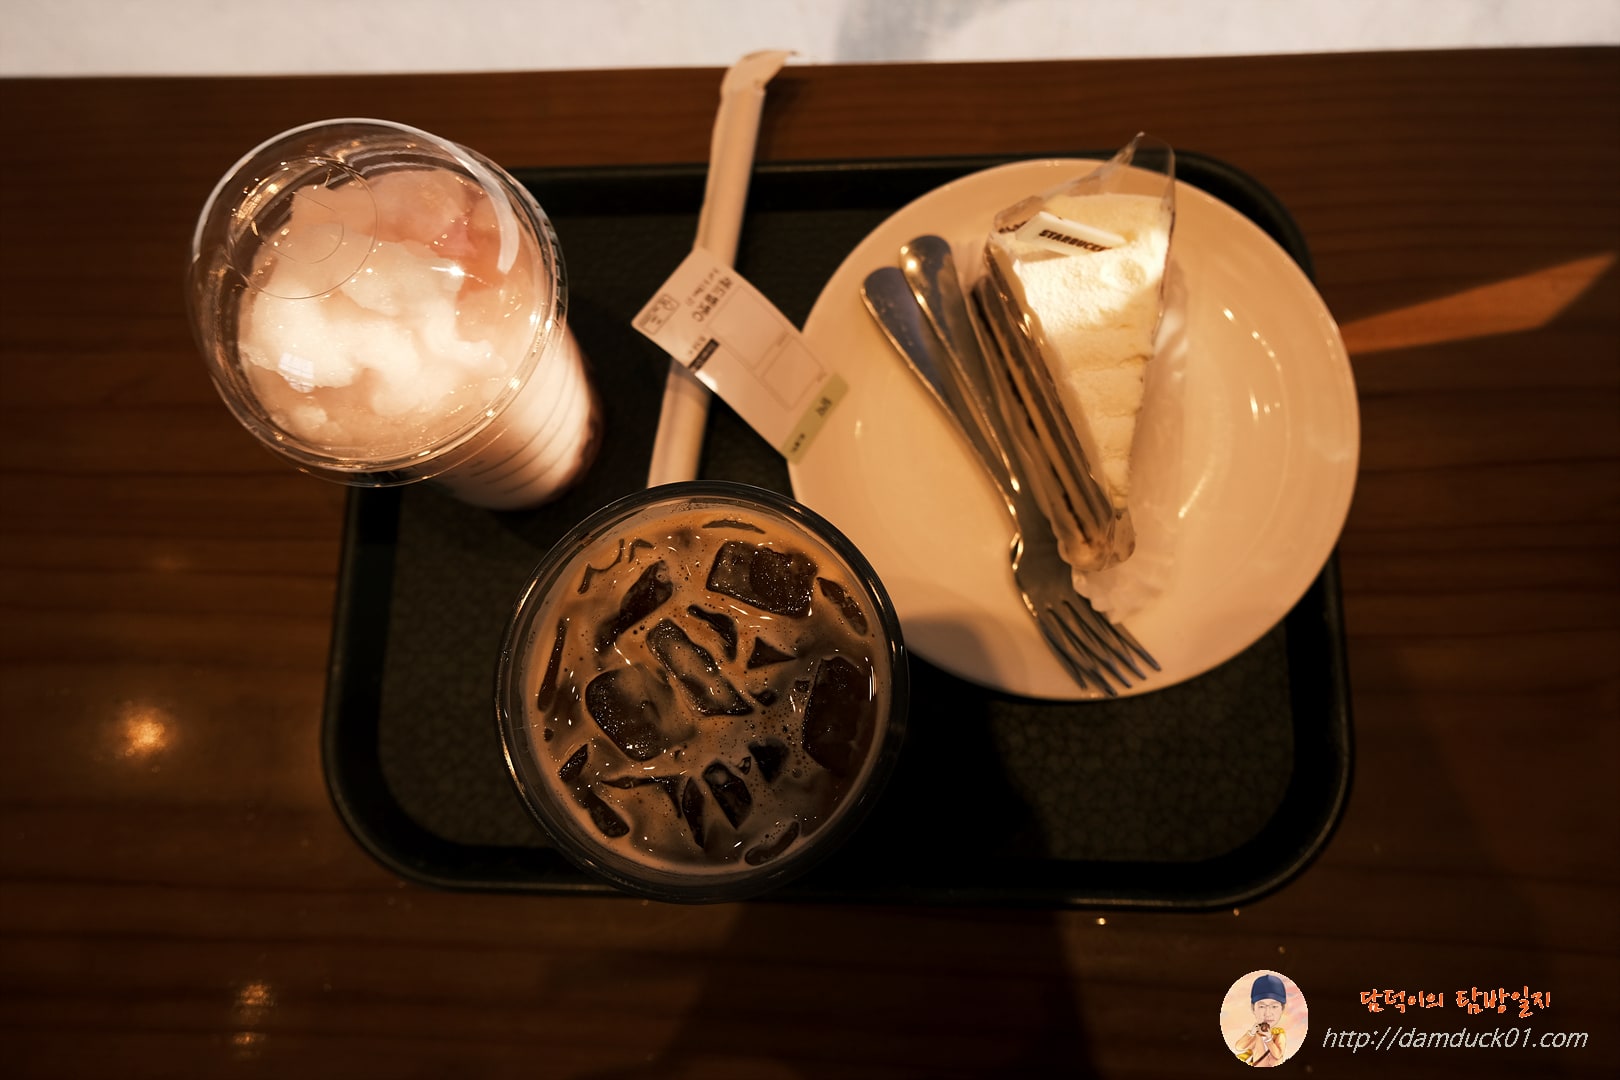 피치&레몬 블렌디드, 아이스 스타벅스 돌체 라떼, 레드벨벳 크림치즈 케이크